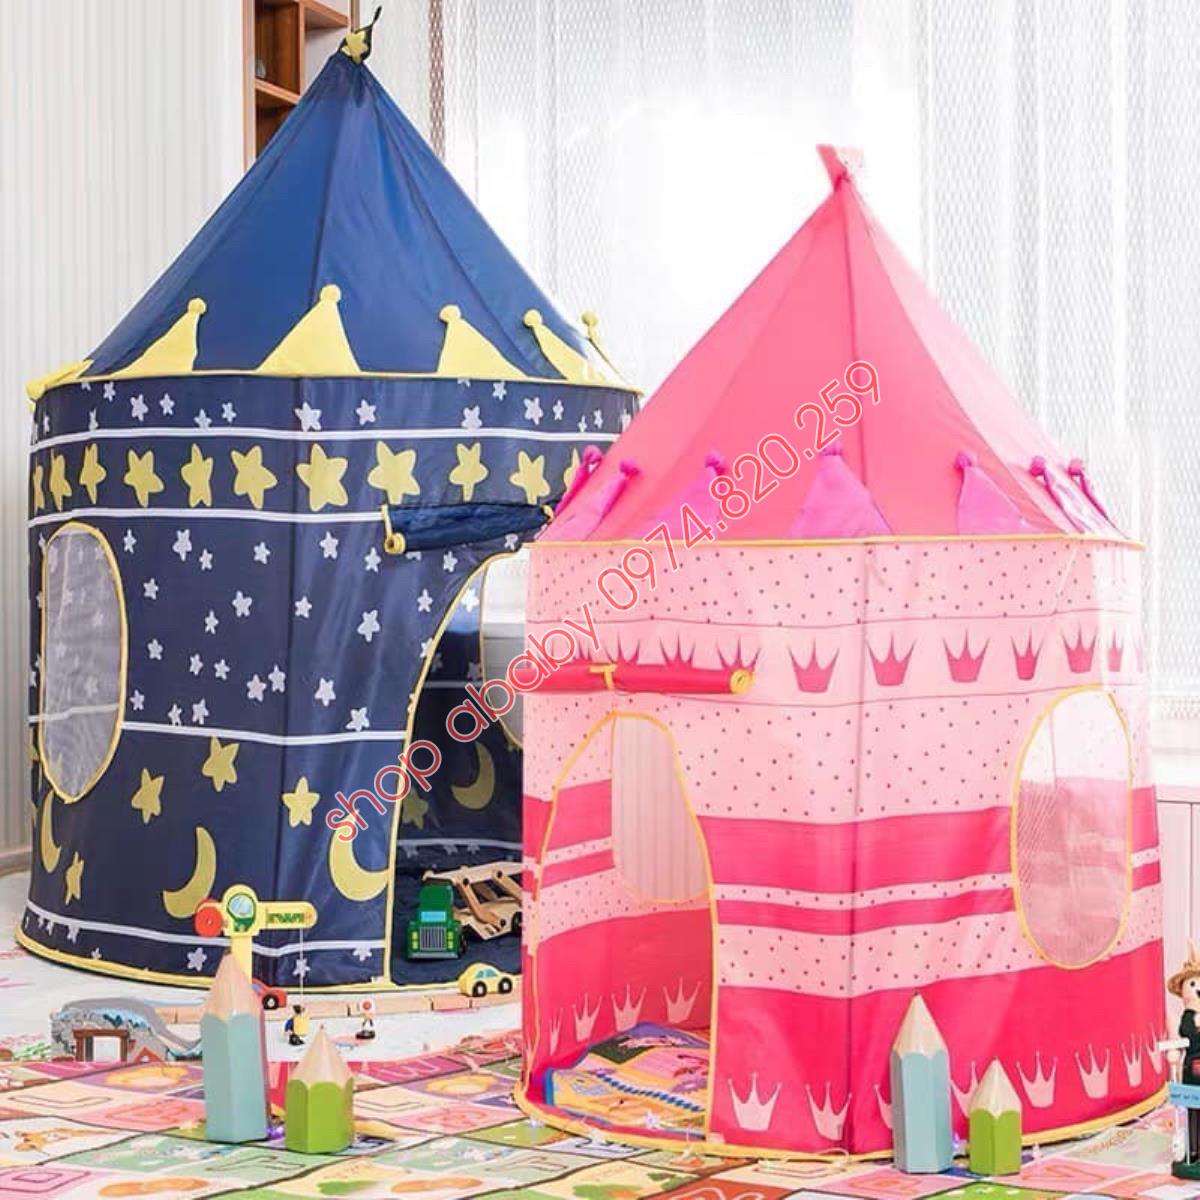 Lều chơi cho bé trai và bé gái trong nhà, ngoài trời, thiết kế phong cách công chúa - hoàng tử dễ thương, chất liệu khung thép dẻo siêu bền đẹp, có cửa ra vào, phù hợp cho 2-3 bé chơi cùng lúc